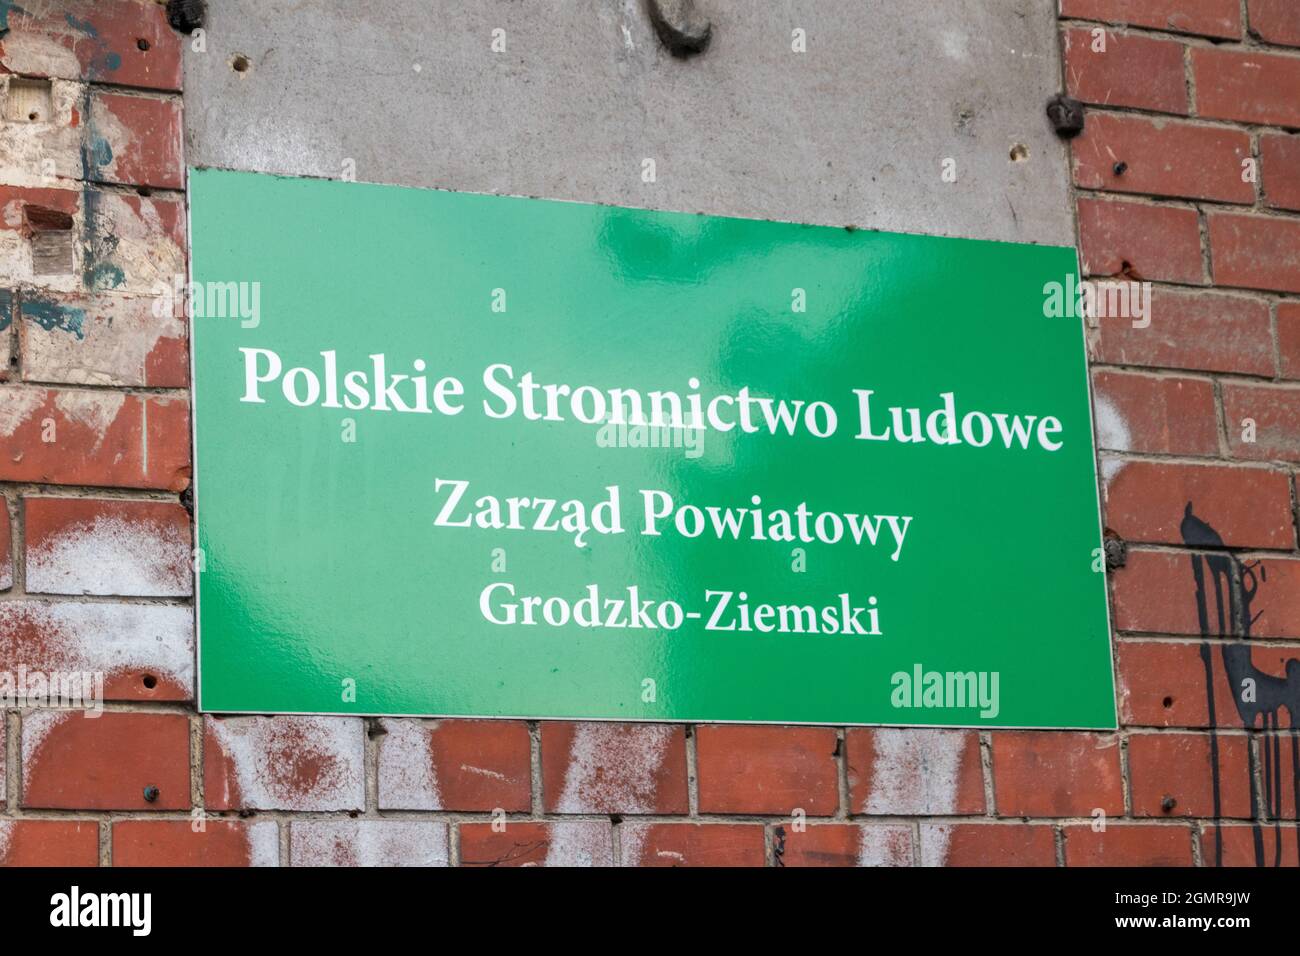 Gorzow Wielkopolski, Poland - June 1, 2021: Polish People's Party (Polish: Polskie Stronnictwo Ludowe) sign. Poviat board of PSL. Stock Photo